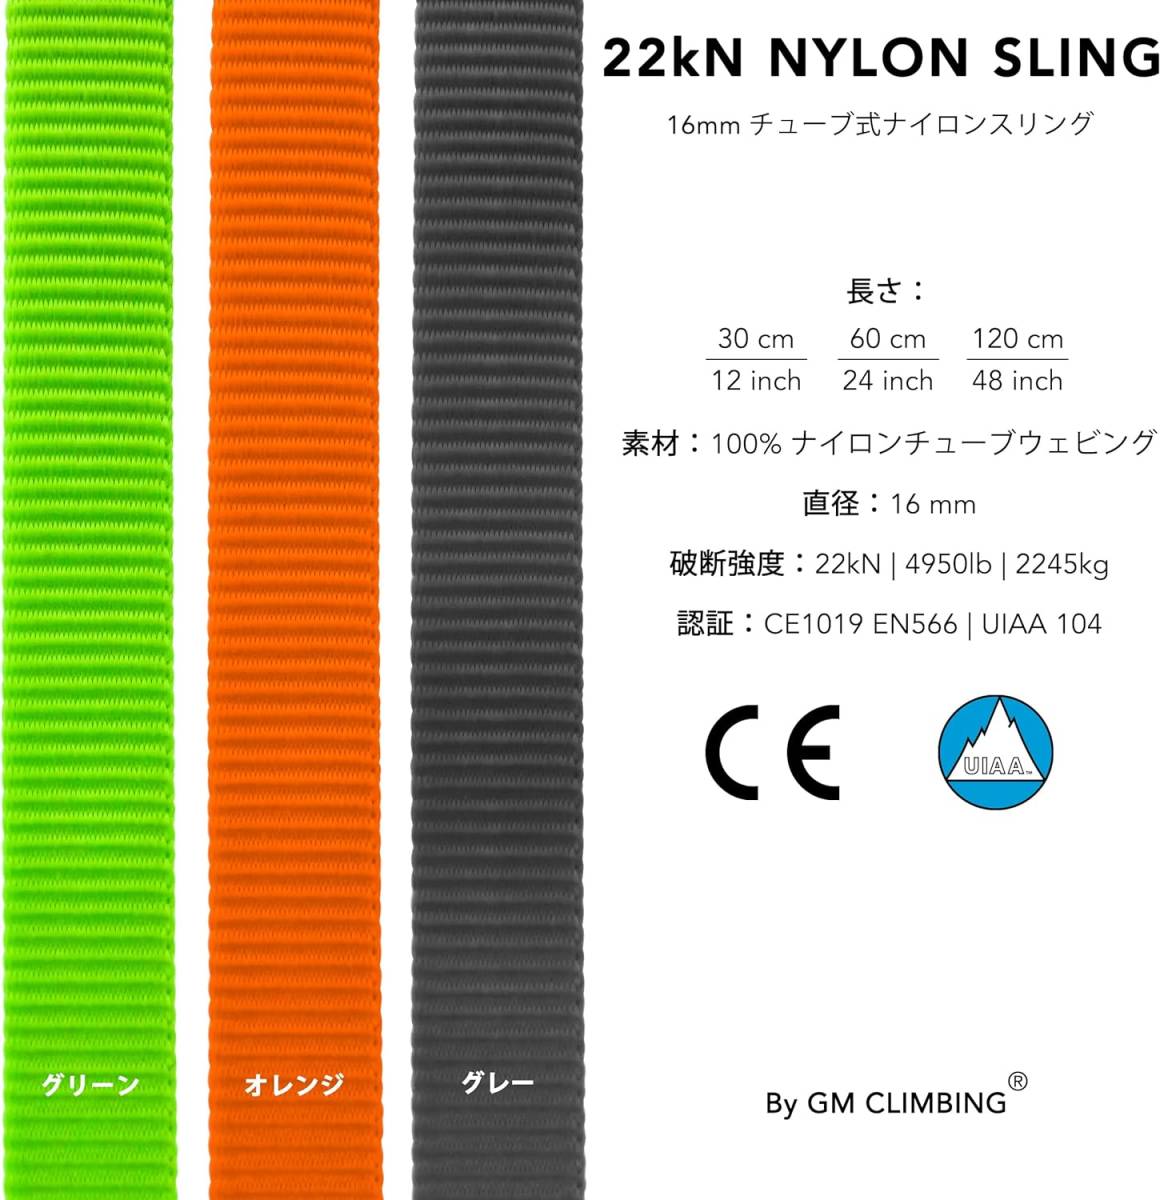 60cm x 3本入り オレンジ GM CLIMBING UIAA CE 認証 22kN 16mm ナイロンスリング ランナー ク_画像3